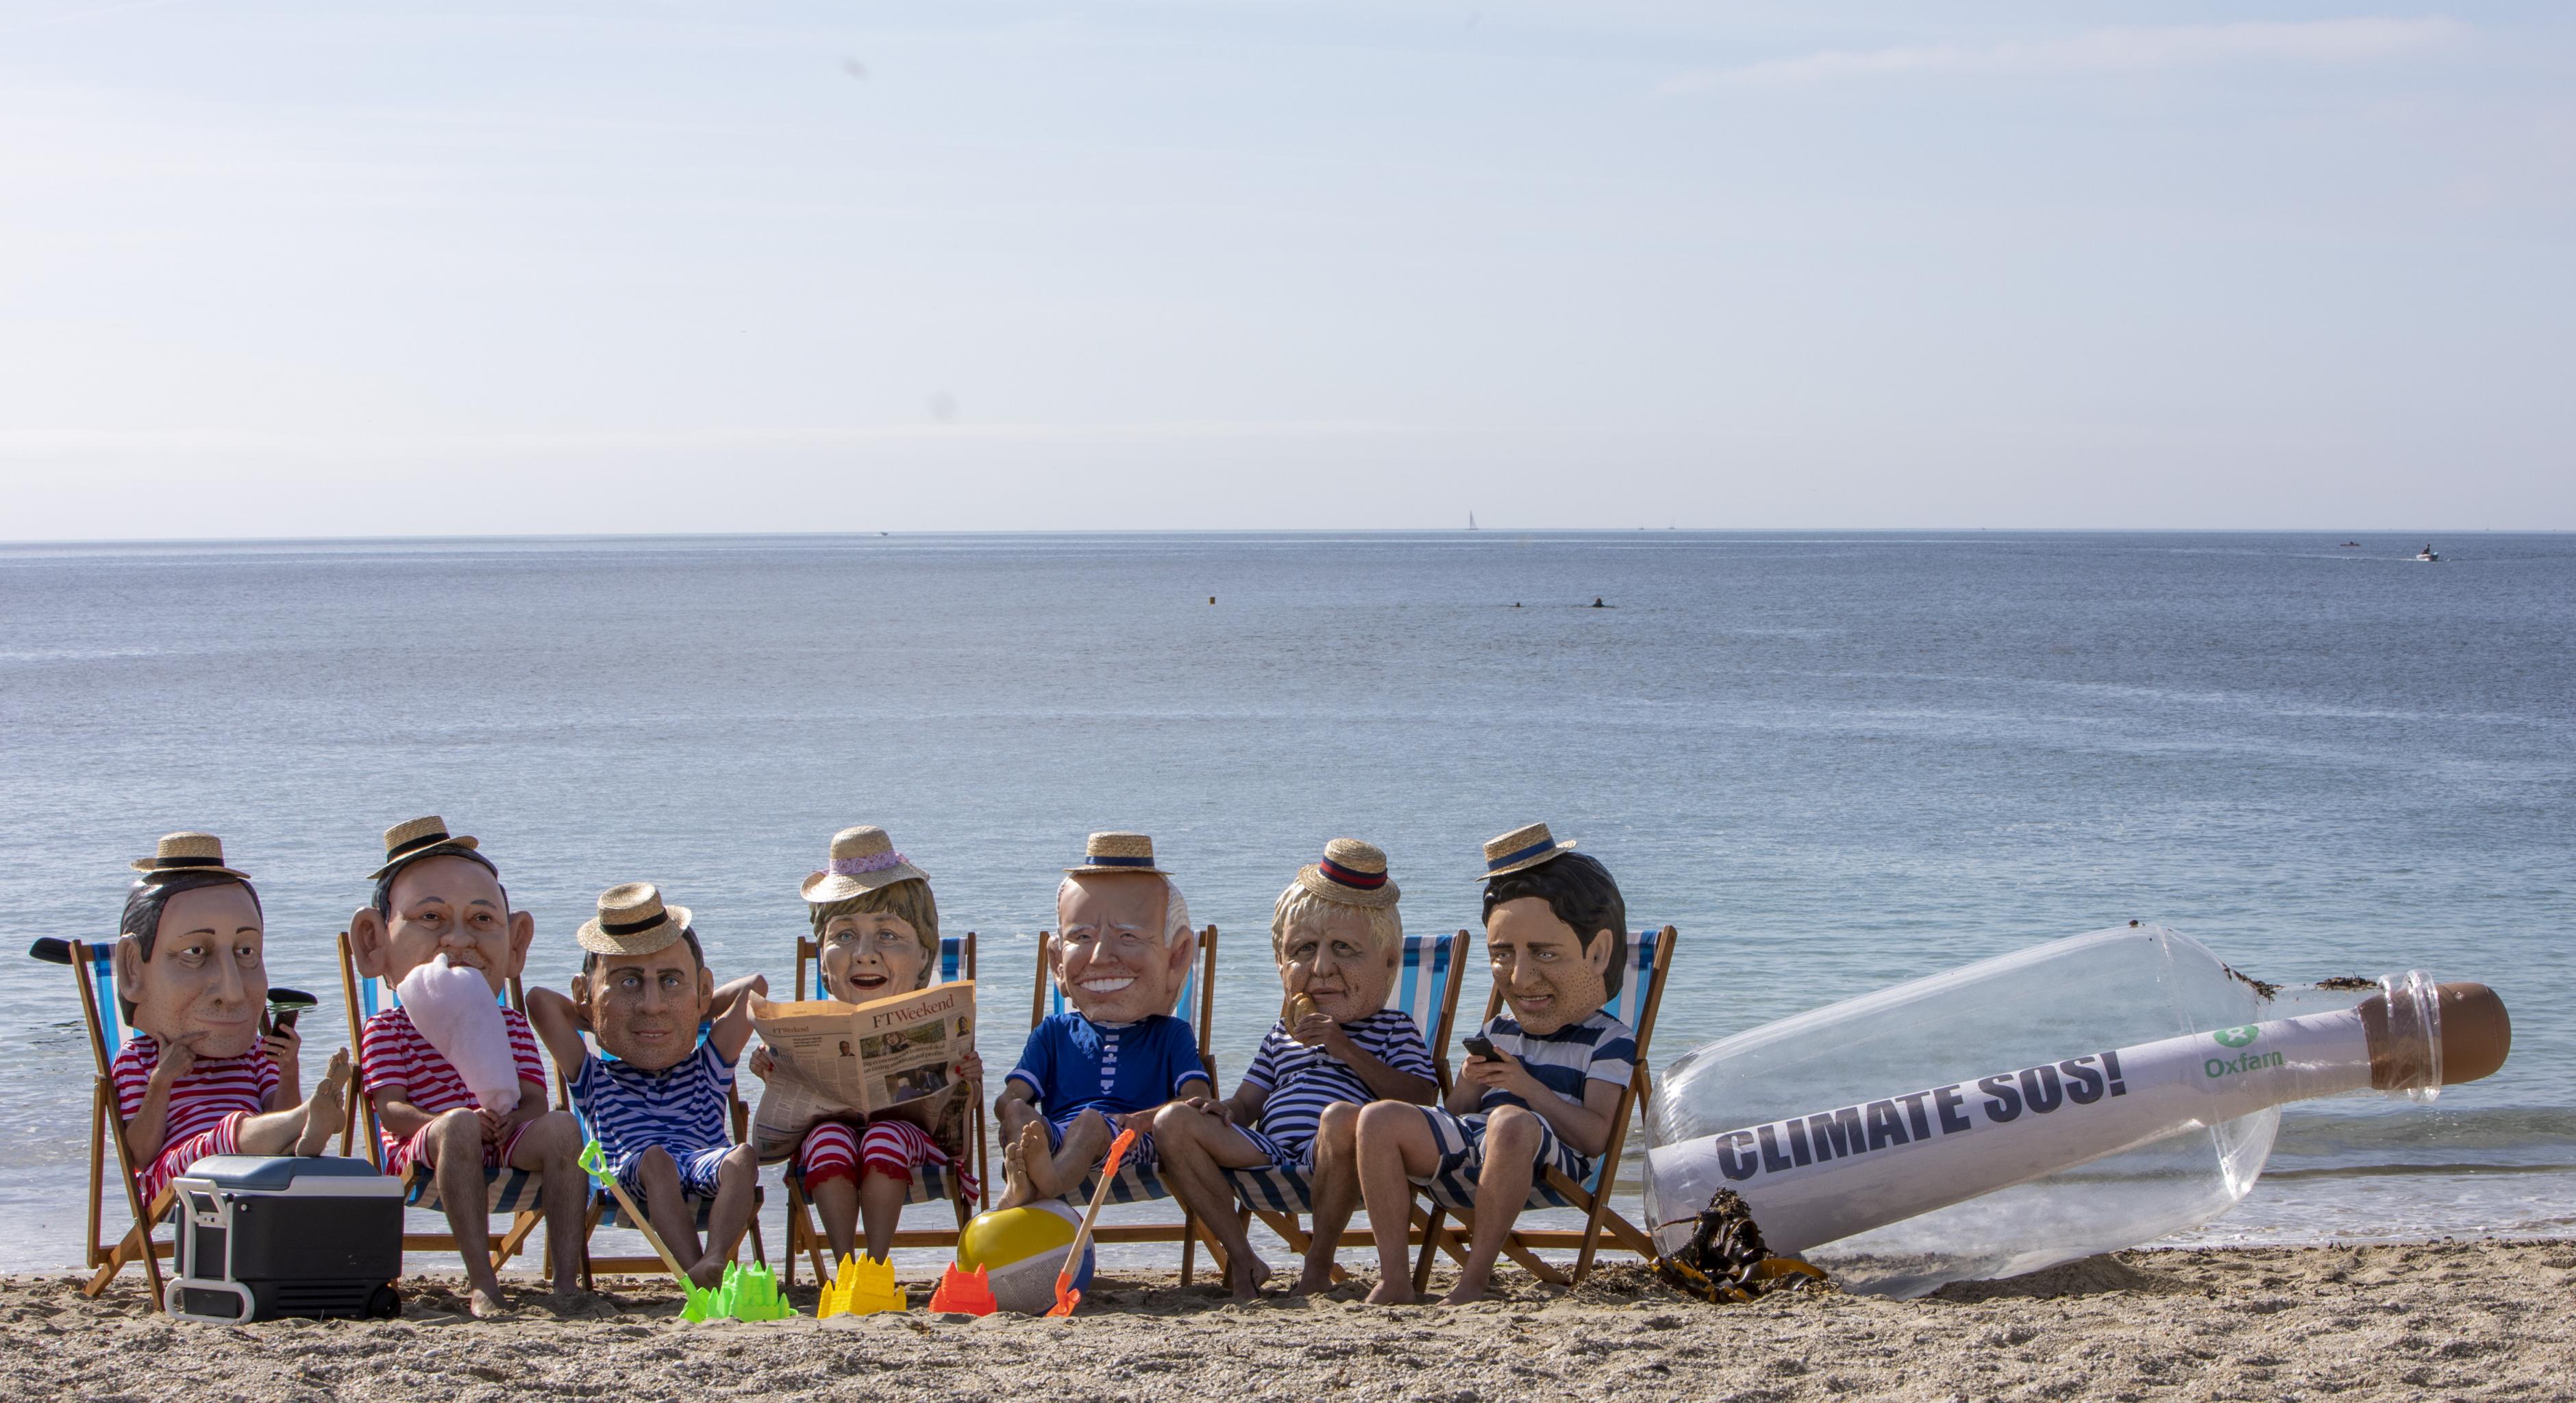 Aktivist*innen posieren als G7-Regierungschef*innen am Strand. Sie tragen gestreifte Badesachen und Sonnenhüte.